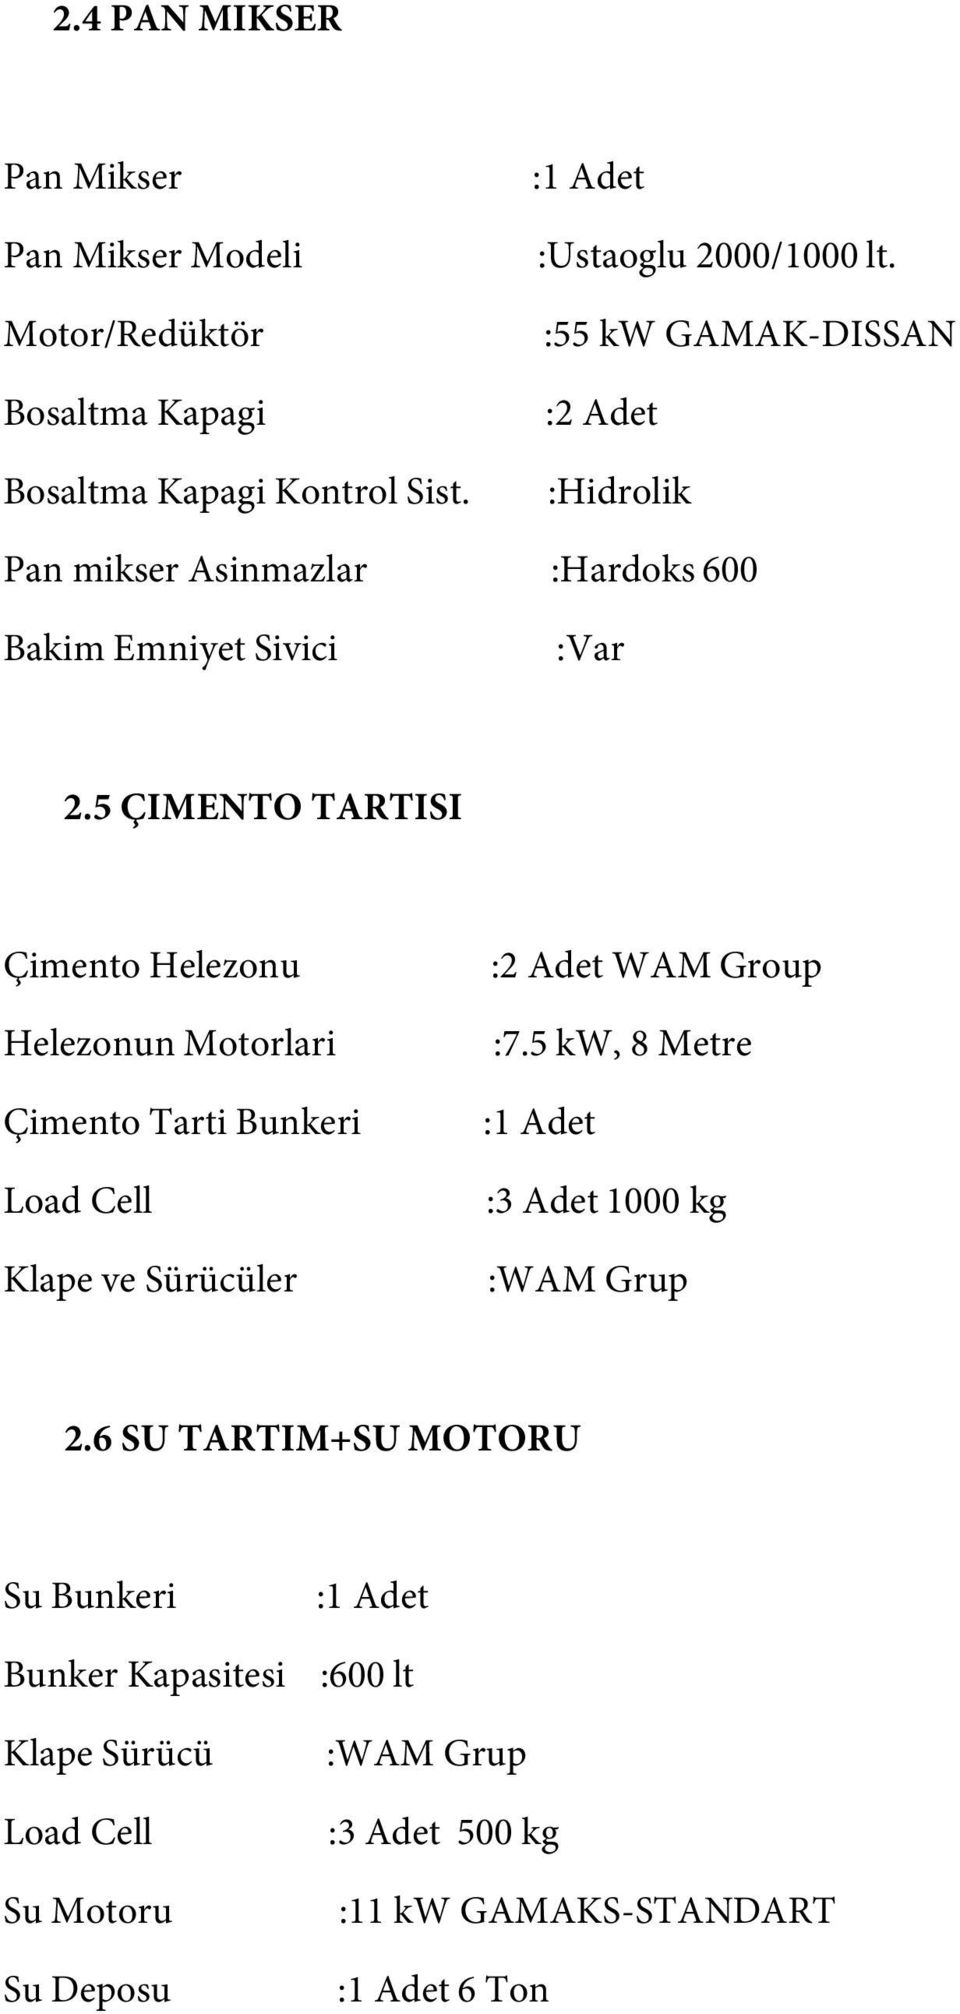 5 ÇIMENTO TARTISI Çimento Helezonu Helezonun Motorlari Çimento Tarti Bunkeri Klape ve Sürücüler :2 Adet WAM Group :7.